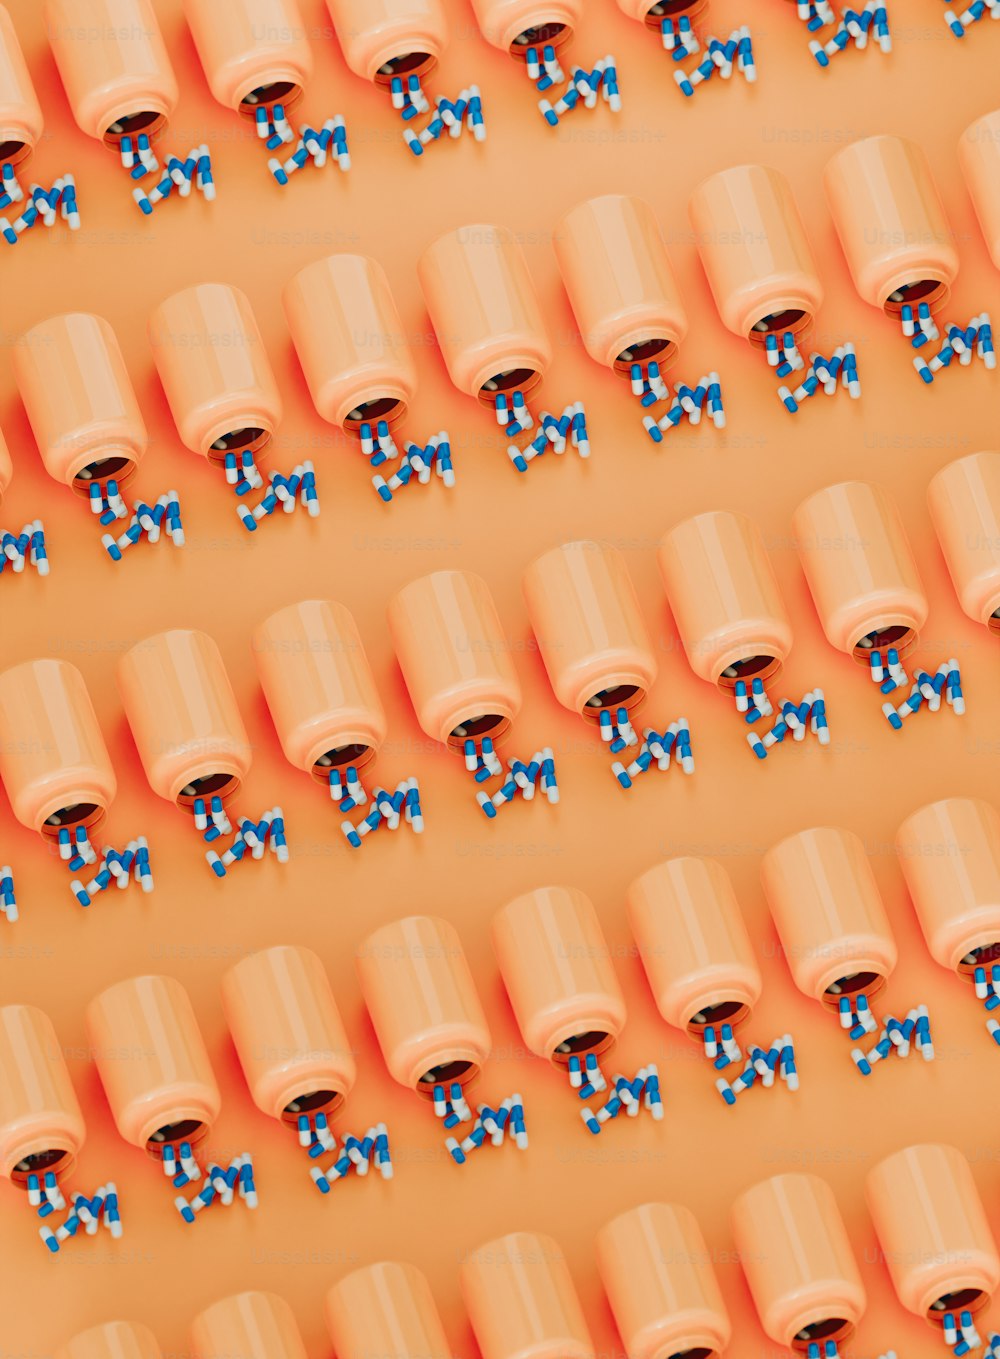 un gruppo di tazze arancioni con fiocchi blu su di esse